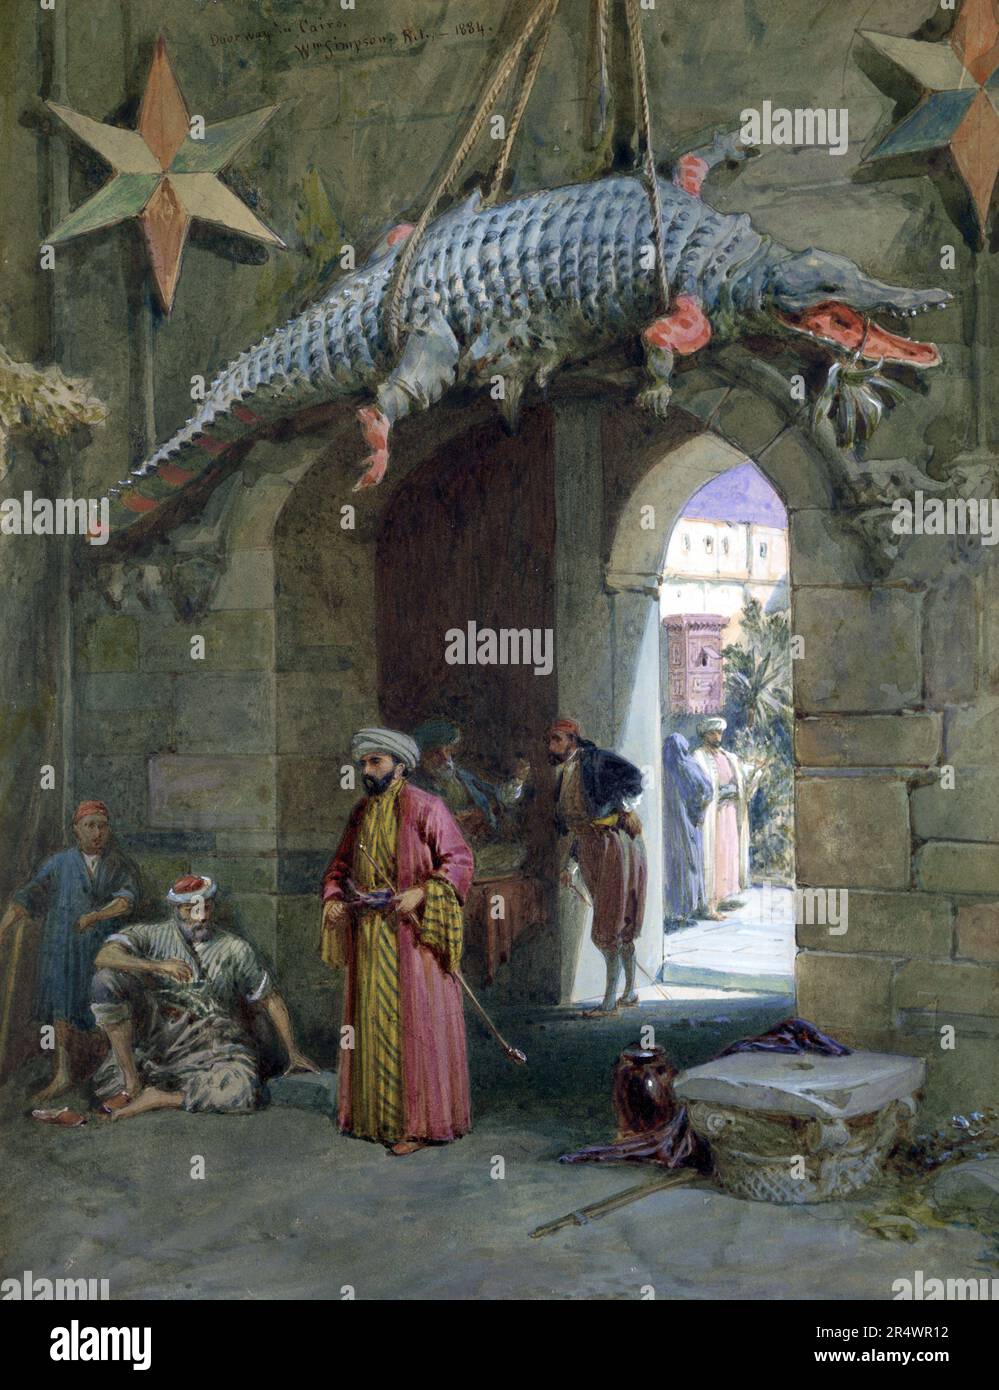 Gateway, Kairo, 1884. Aquarell. William Simpson (1823-1899) schottischer Maler. Steinbogen mit Krokodilkörper darüber. Männer in arabischen Kleidern laufen, reden und warten. Durch den Bogen im Hof, Mann und Frau im Gespräch. Stockfoto